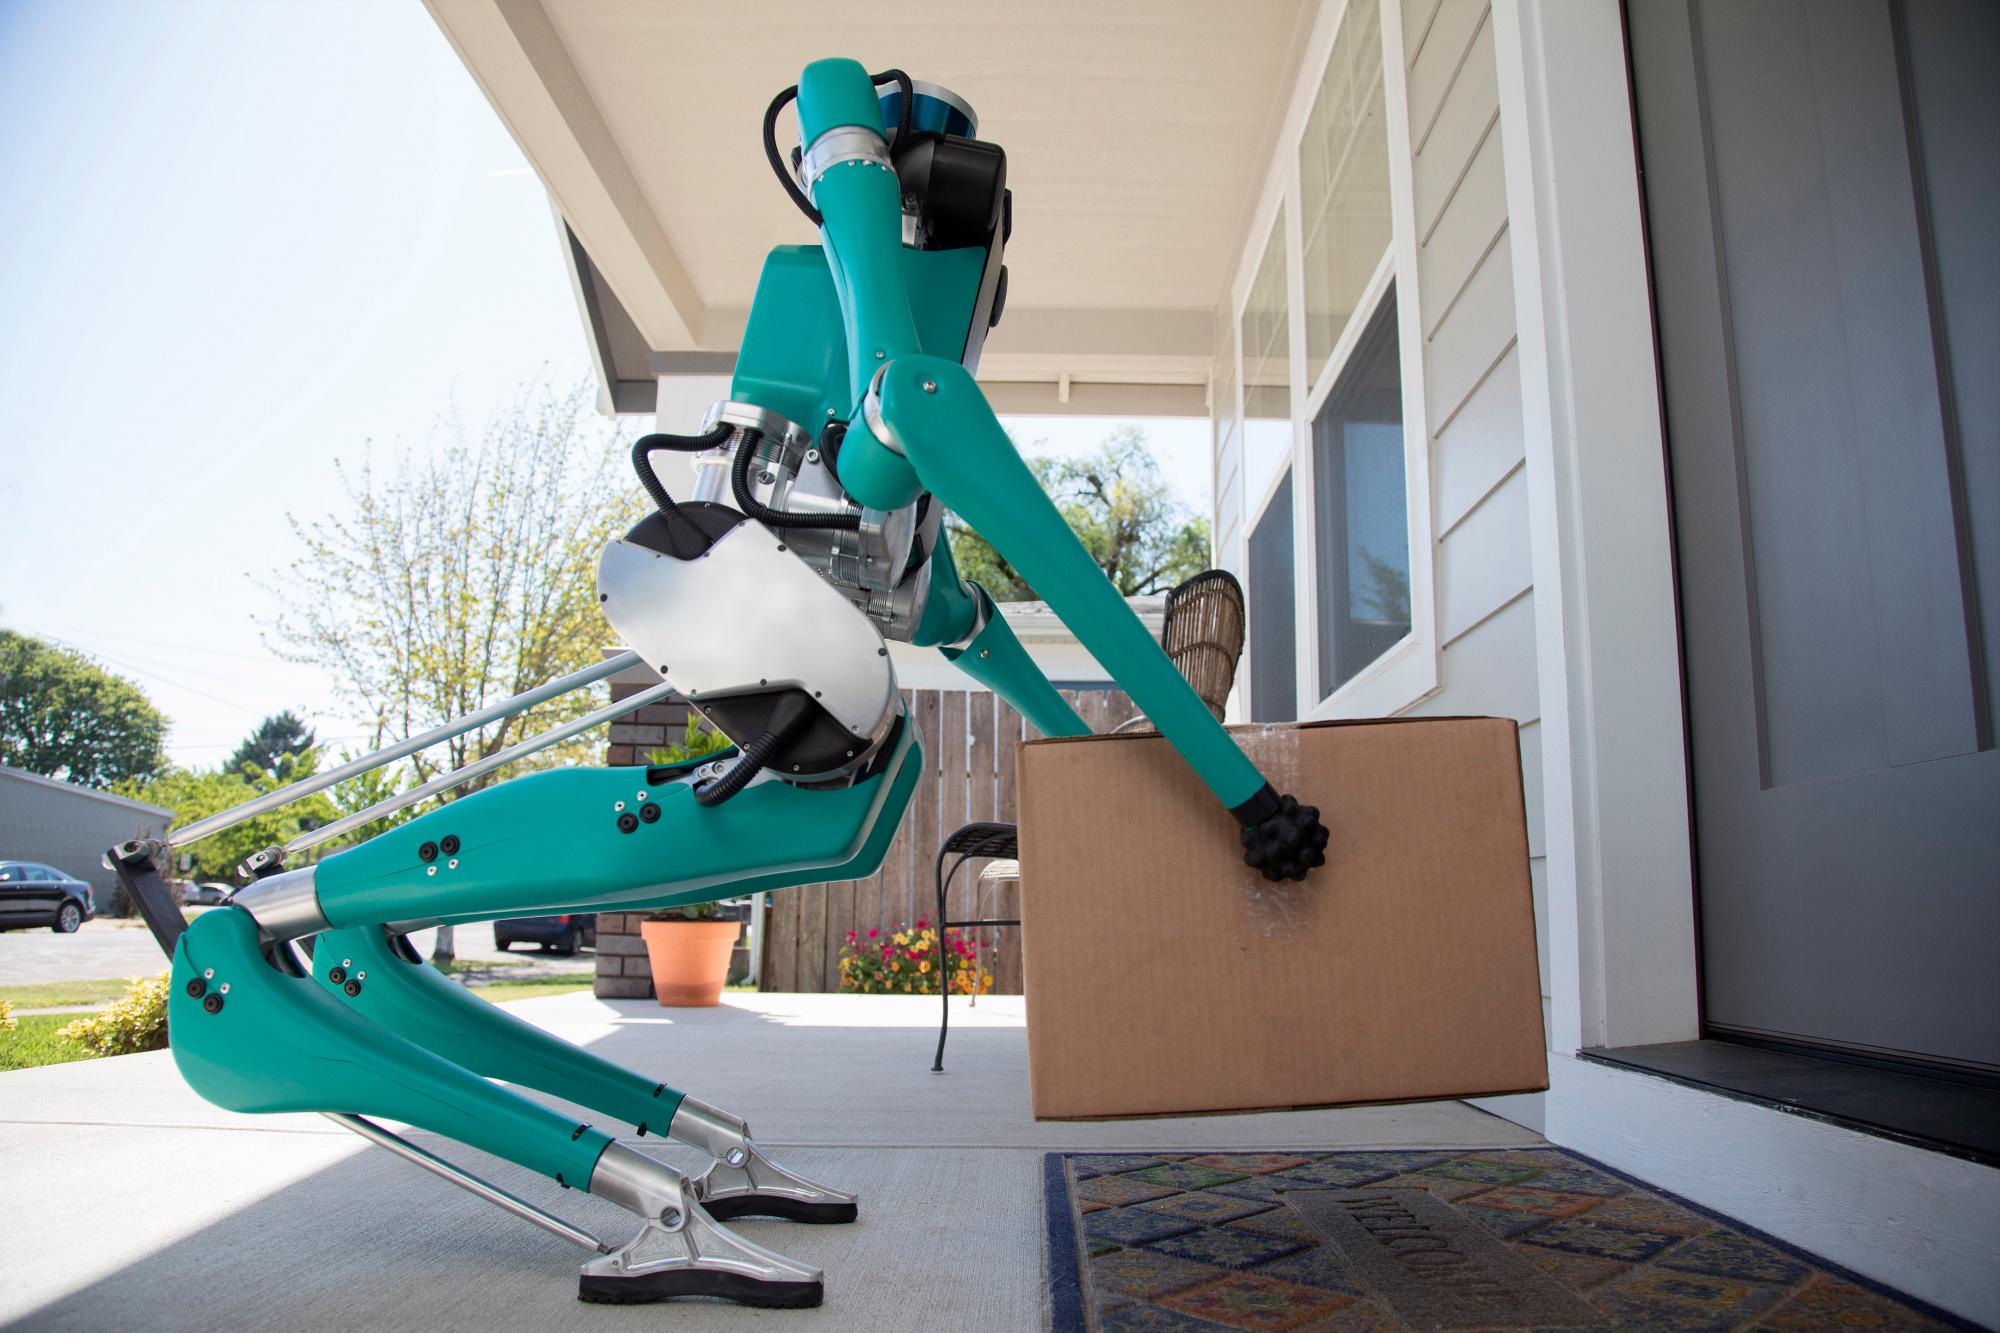 Digit pesa poco, tiene un diseño sencillo y se mueve con agilidad porque aprovecha las habilidades analíticas, soporte electrónico, recursos de computación y sensores avanzados de otro robot, el del vehículo autónomo, que lo traslada.